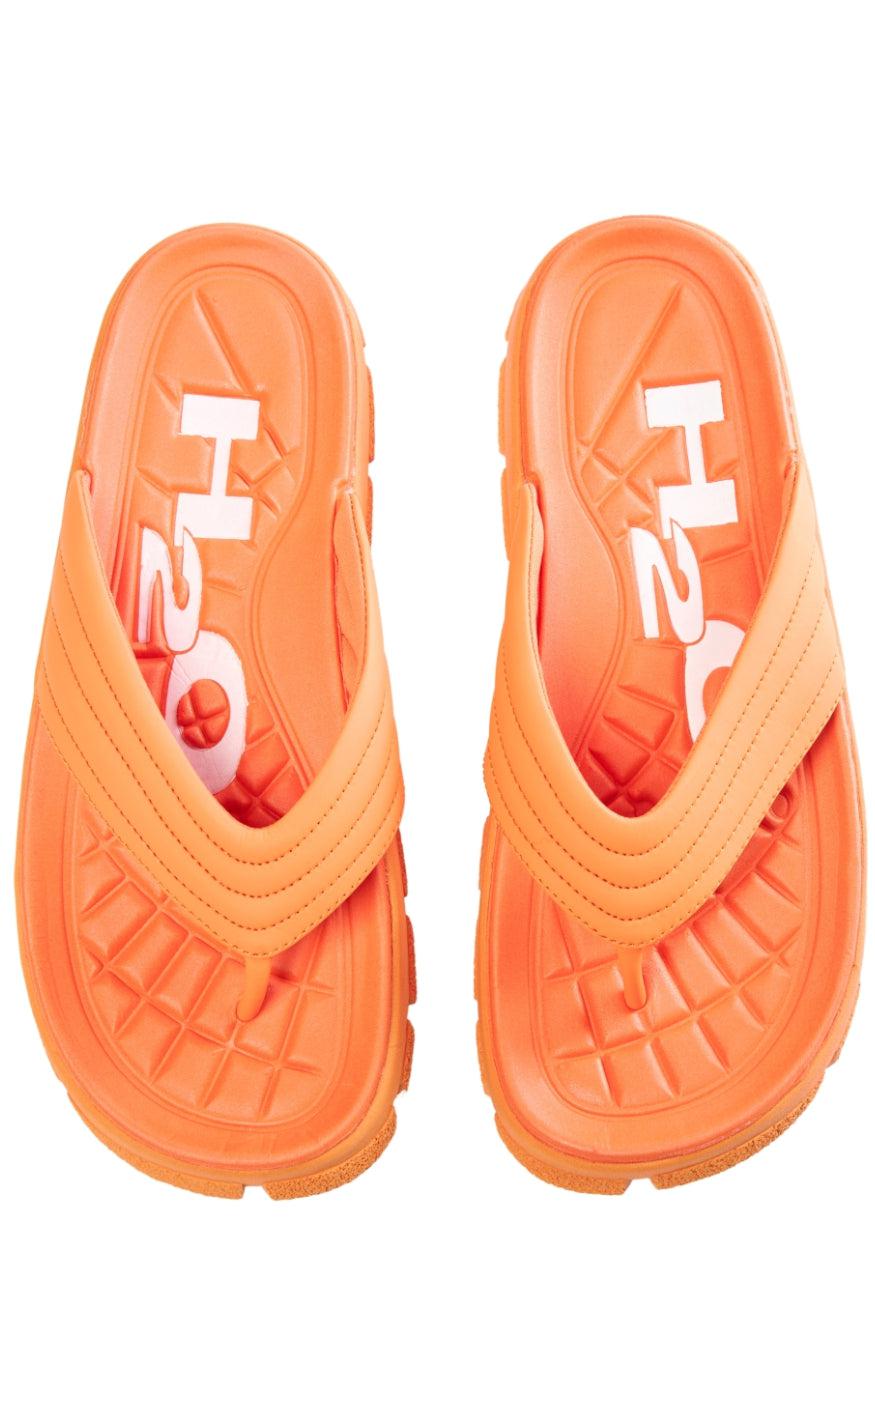 Billede af H2O Sandal - Trek Flip - Orange hos Fashionbystrand